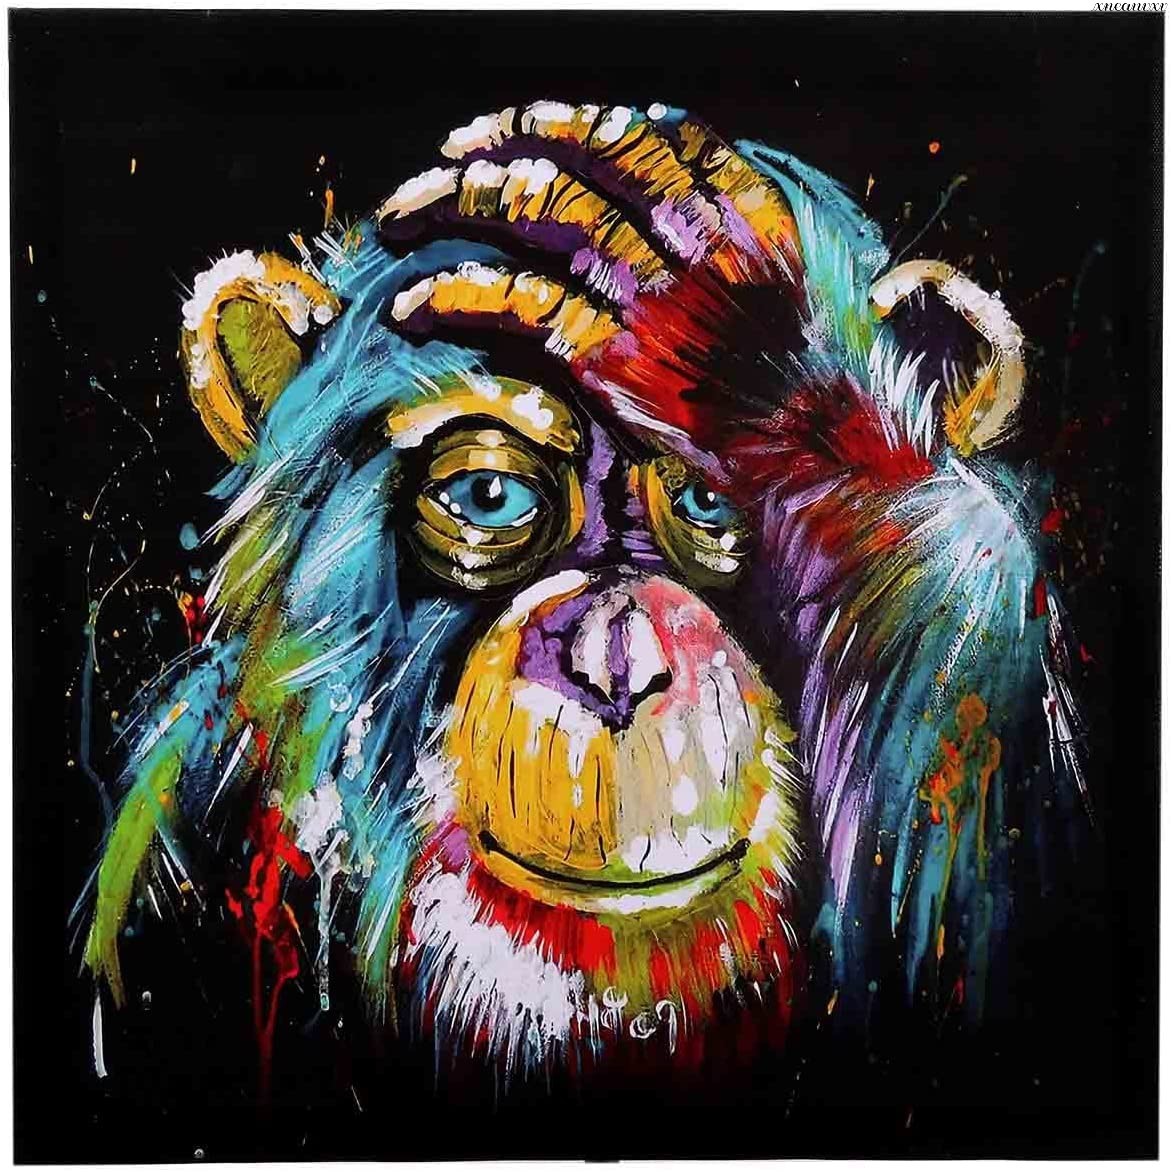 세련된 아트 패널 원숭이 다채로운 인테리어 벽 교수형 방 장식 장식 그림 캔버스 포스터 그림 동물 벽 아트 아트, 그림, 오일 페인팅, 동물 그림